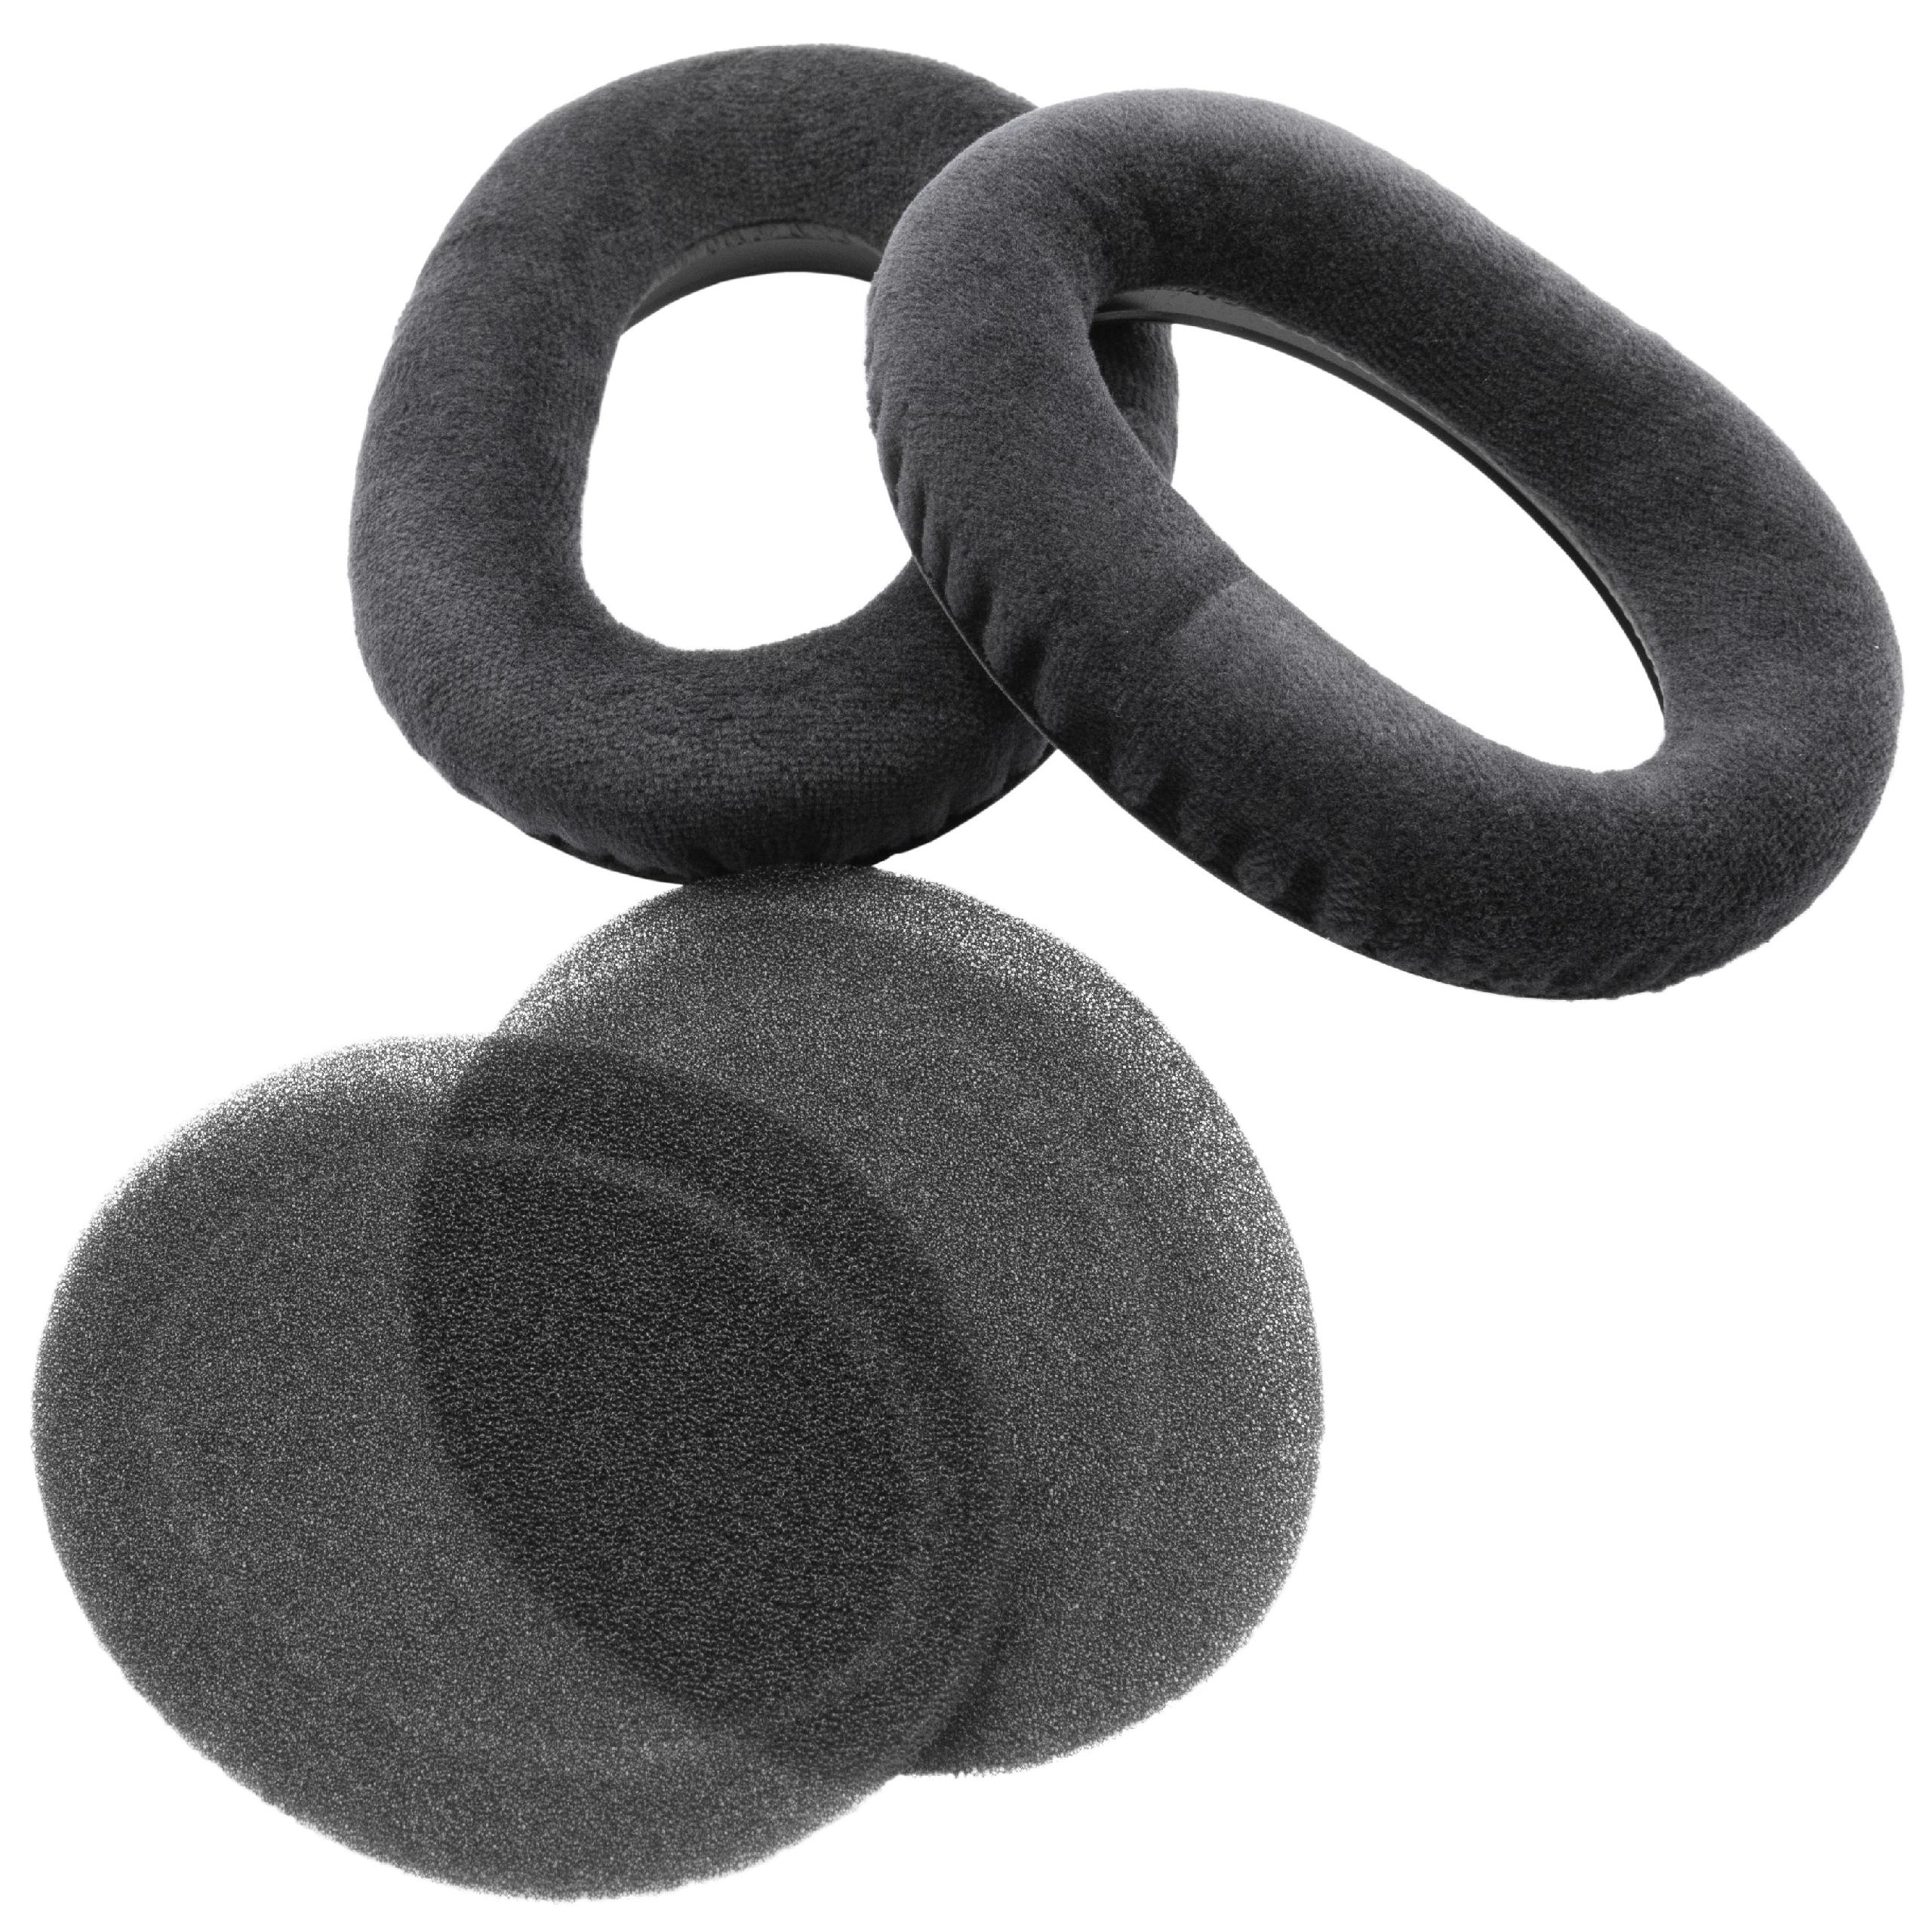 Ohrenpolster passend für Sennheiser HD545 Kopfhörer u.a. - Schaumstoff, 10,1 x 7,6 cm, 19 mm stark, Schwarz